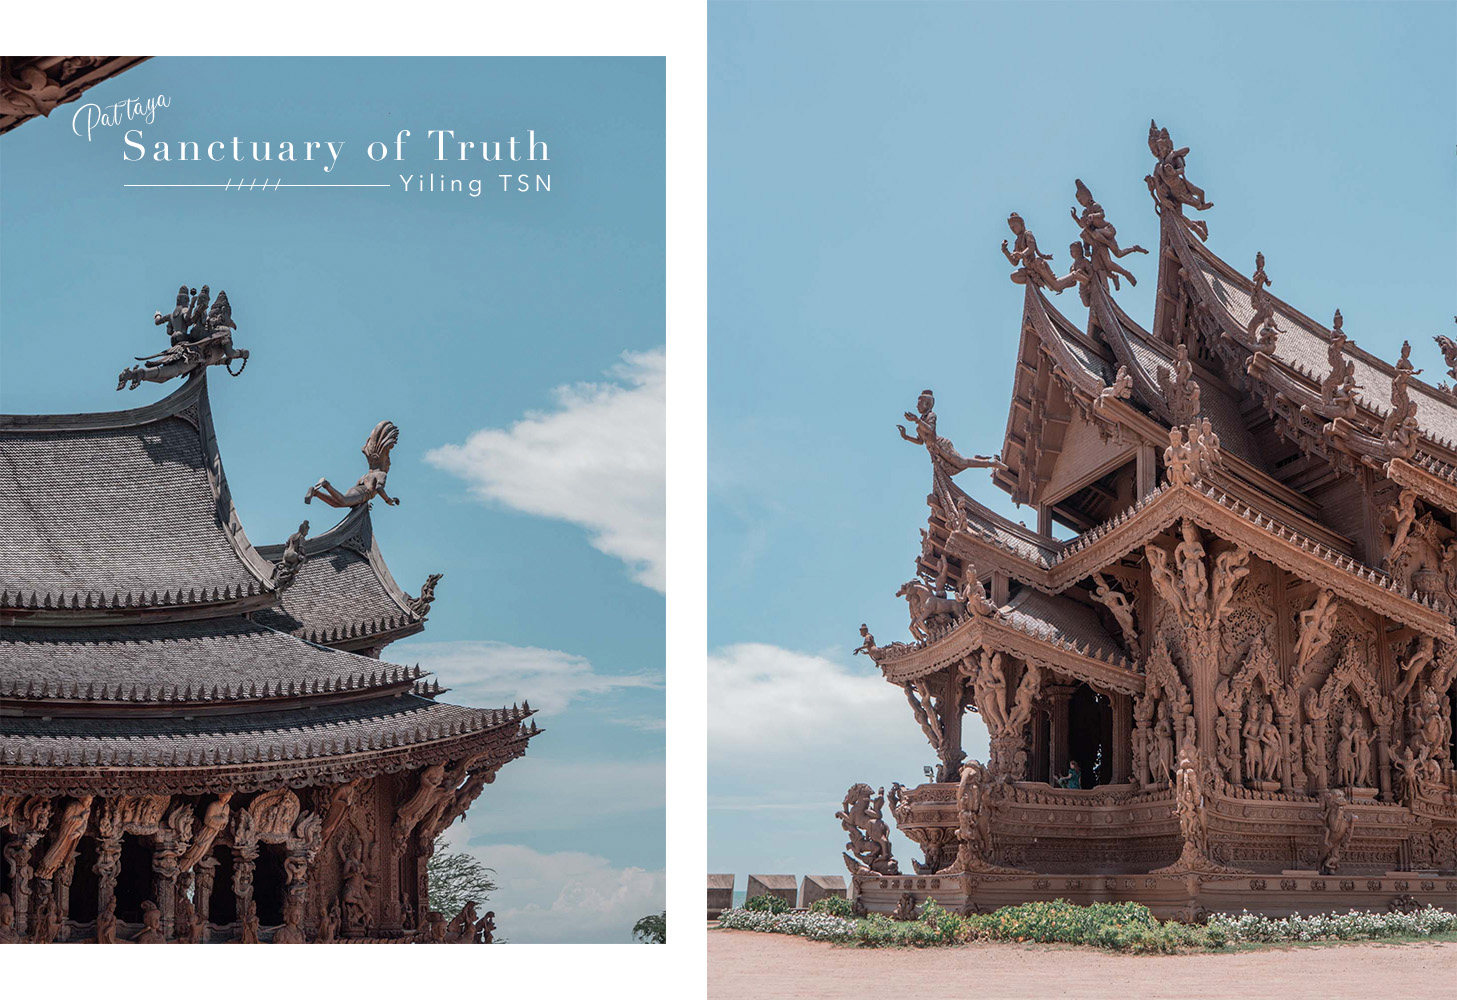 芭達雅景點｜真理寺 Sanctuary of Truth：世界上最壯觀木雕寺廟博物館